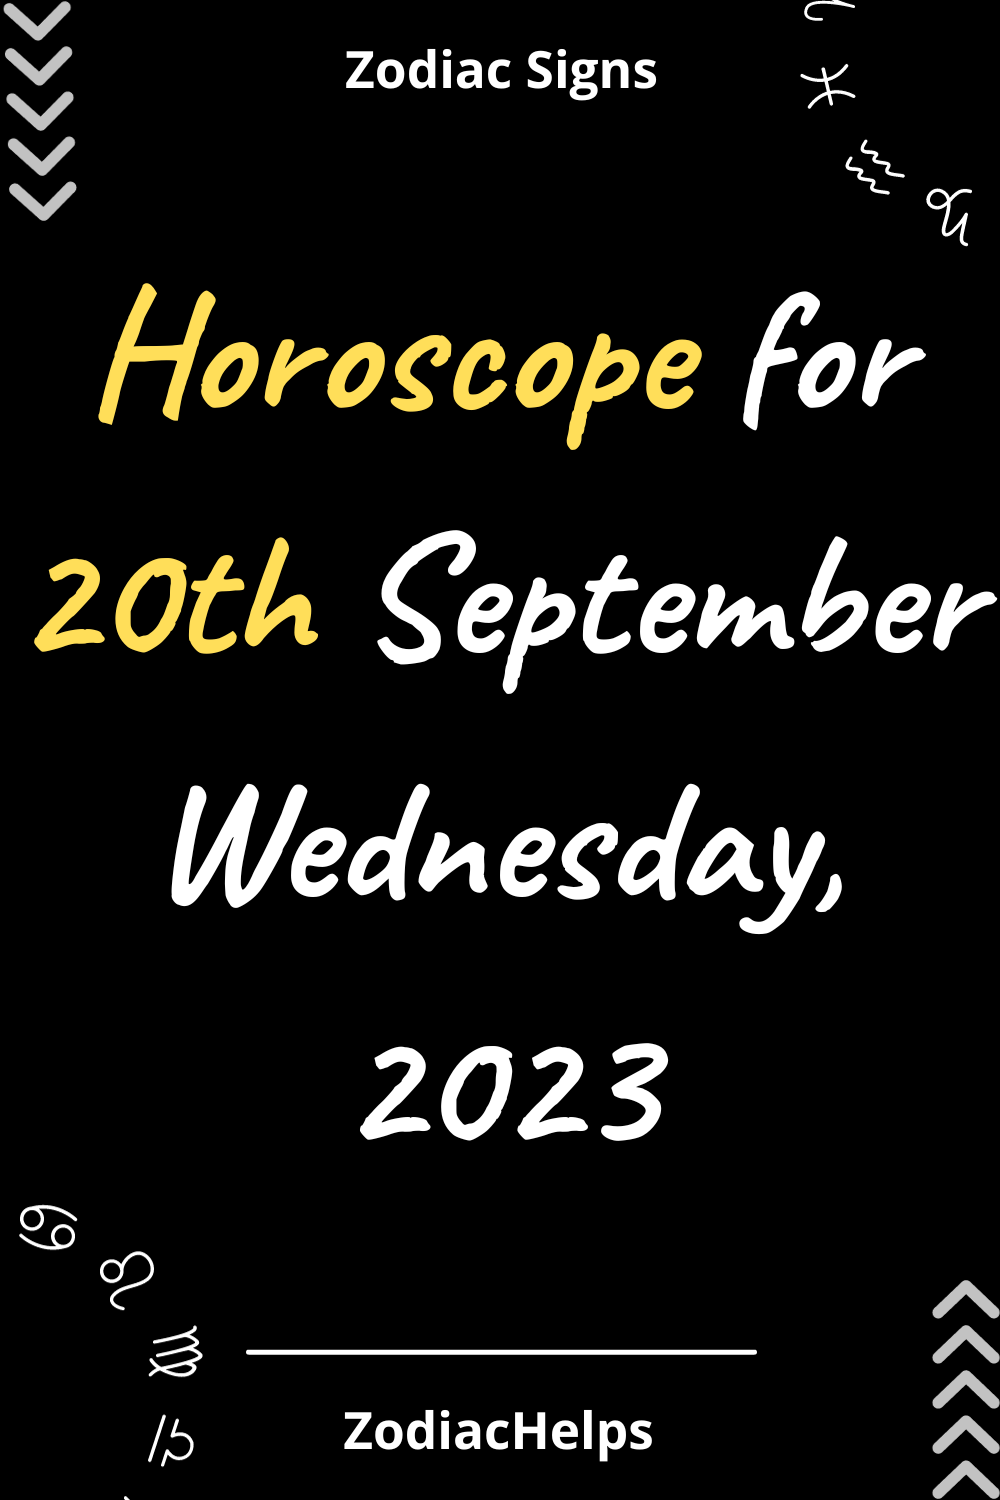 Horoscope for 20th September Wednesday, 2023